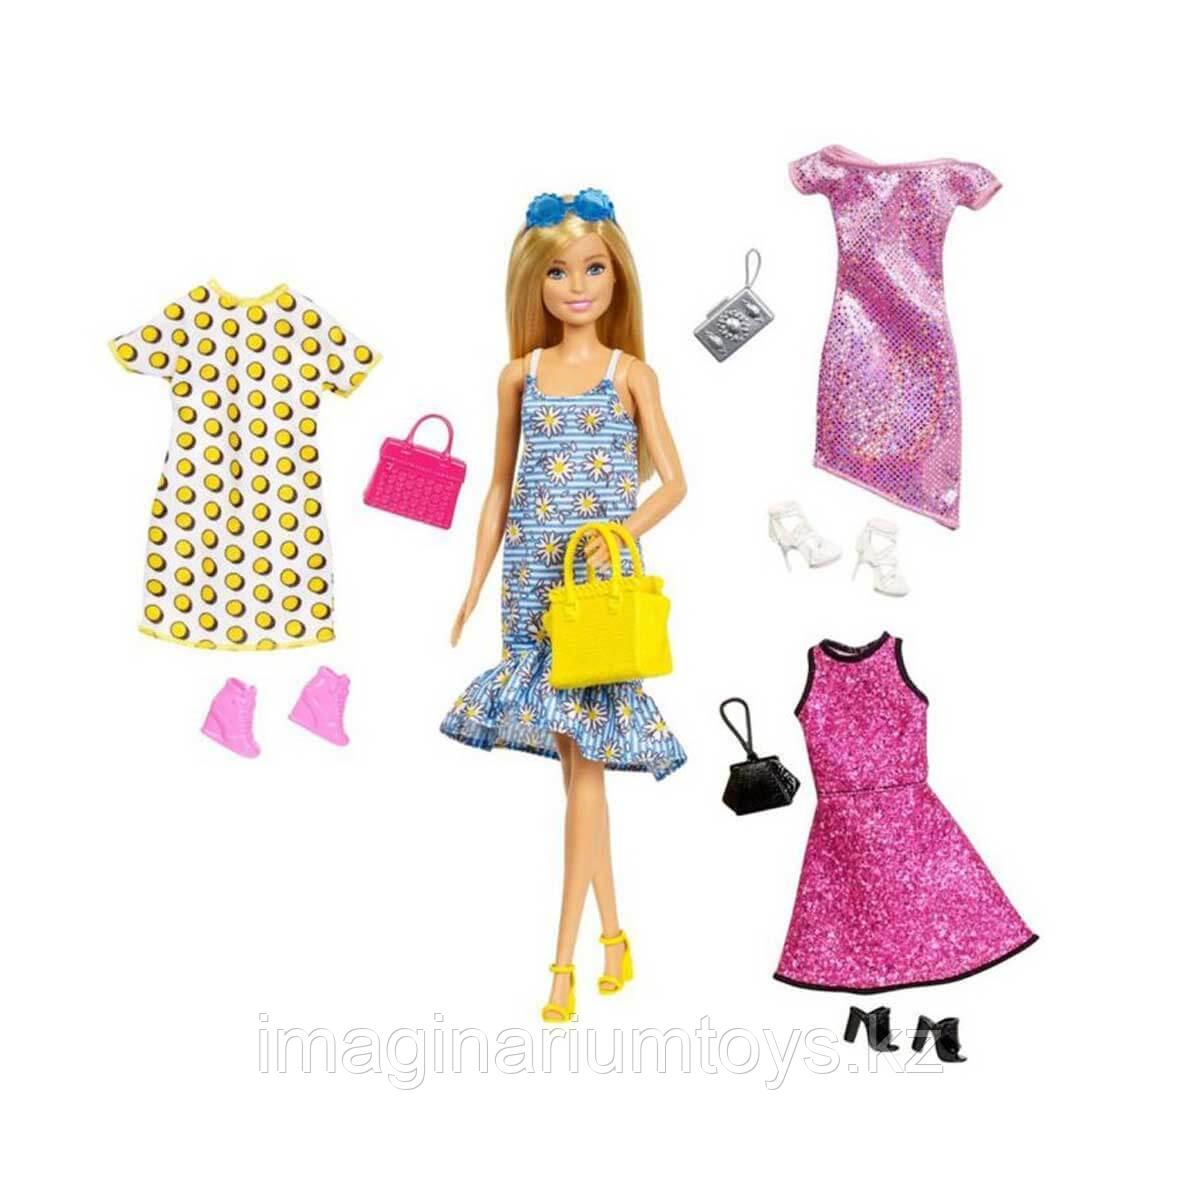 Кукла Барби с одеждой, обувью и акессуарами в наборе, фото 1